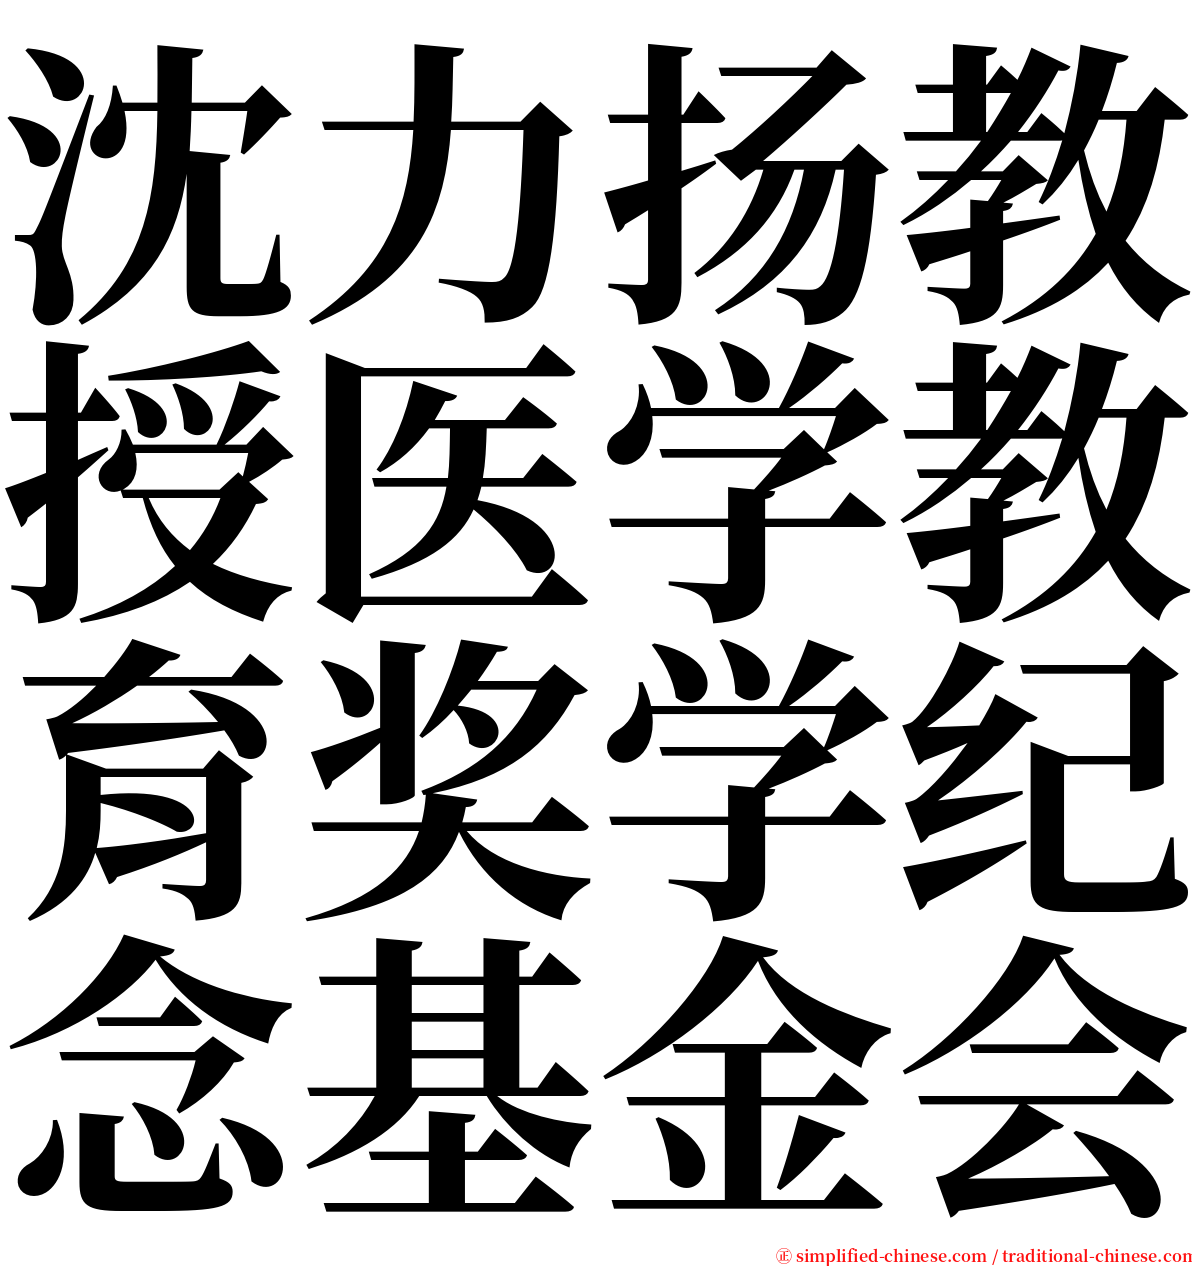 沈力扬教授医学教育奖学纪念基金会 serif font